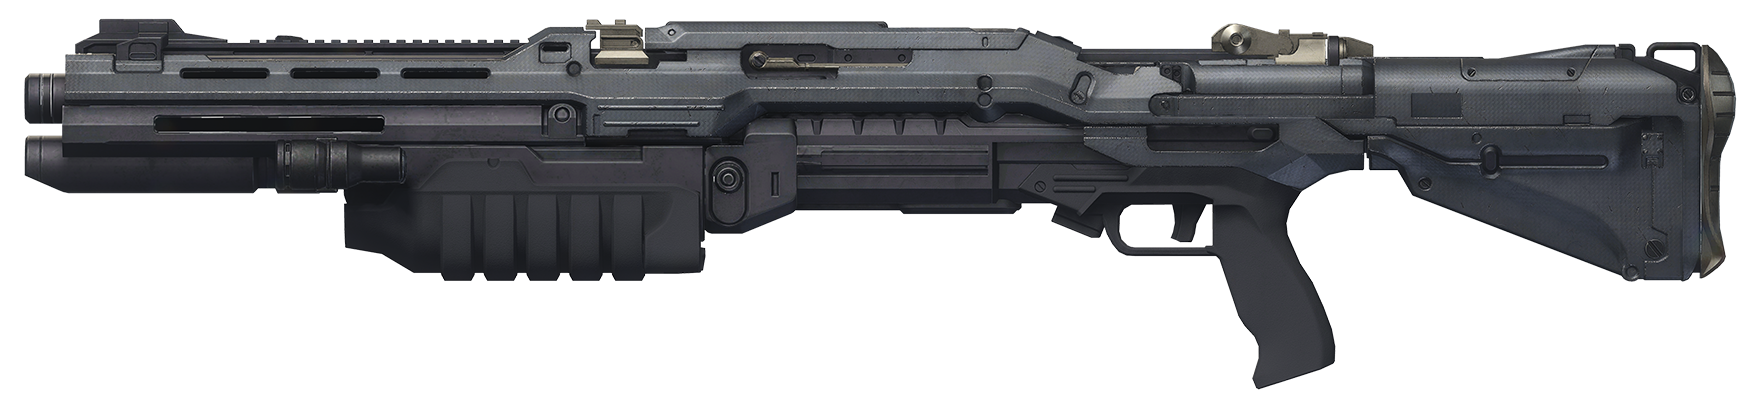 H5G-Render-Shotgun.png